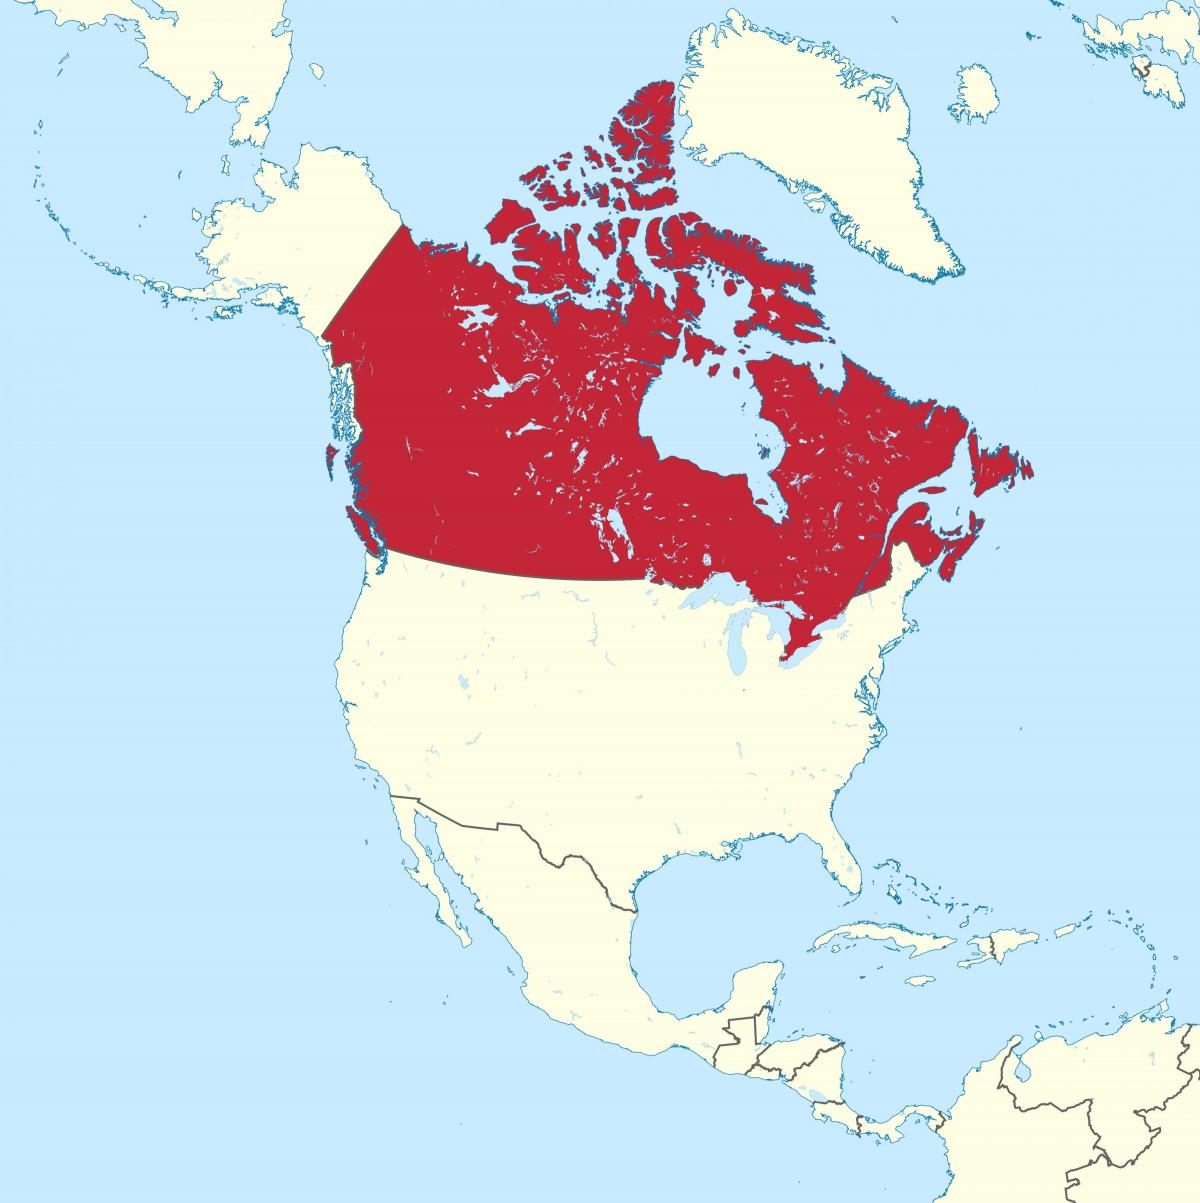 Localização do Canadá no mapa das Américas